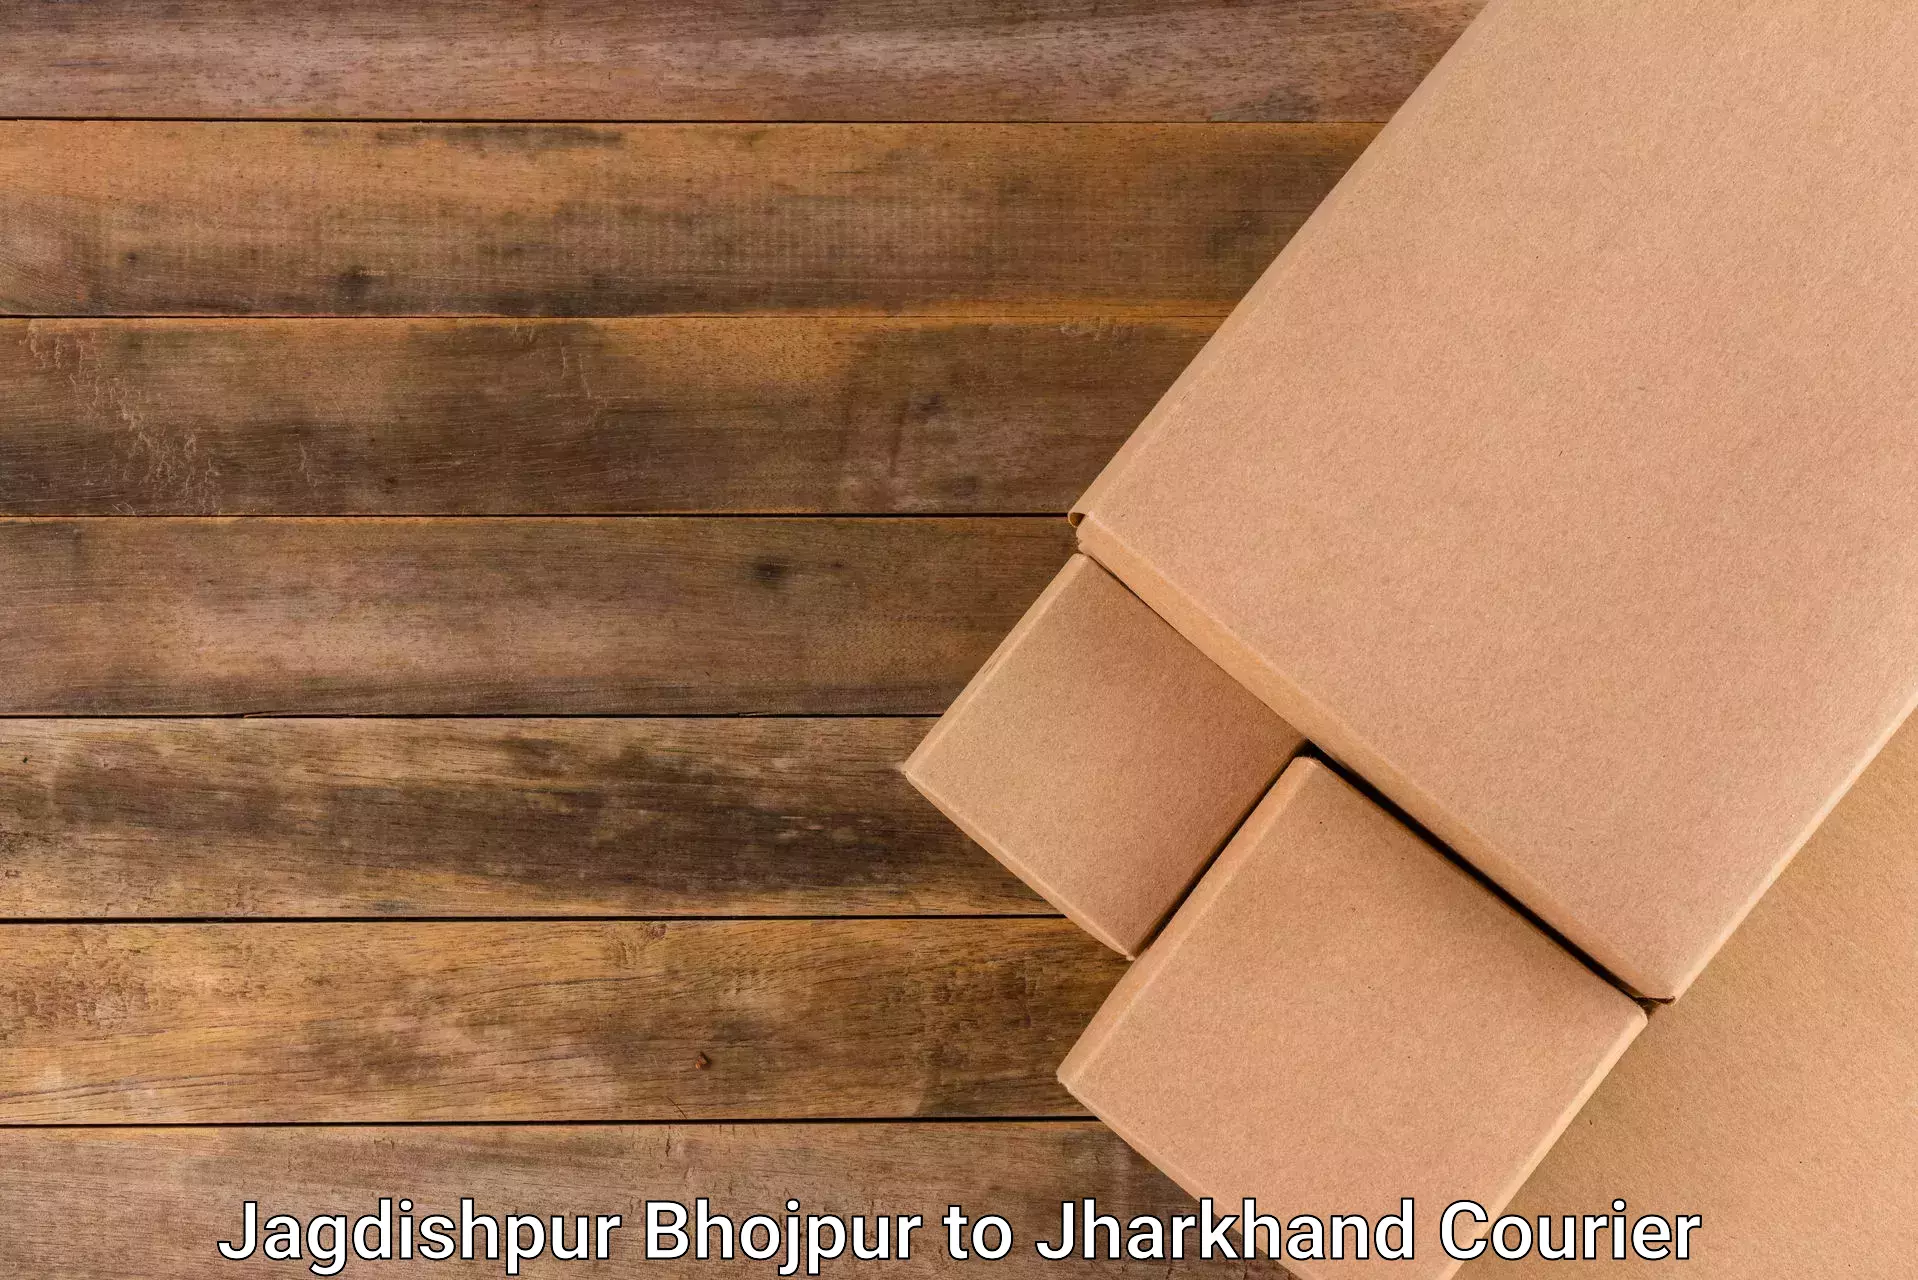 High-capacity parcel service Jagdishpur Bhojpur to Godda